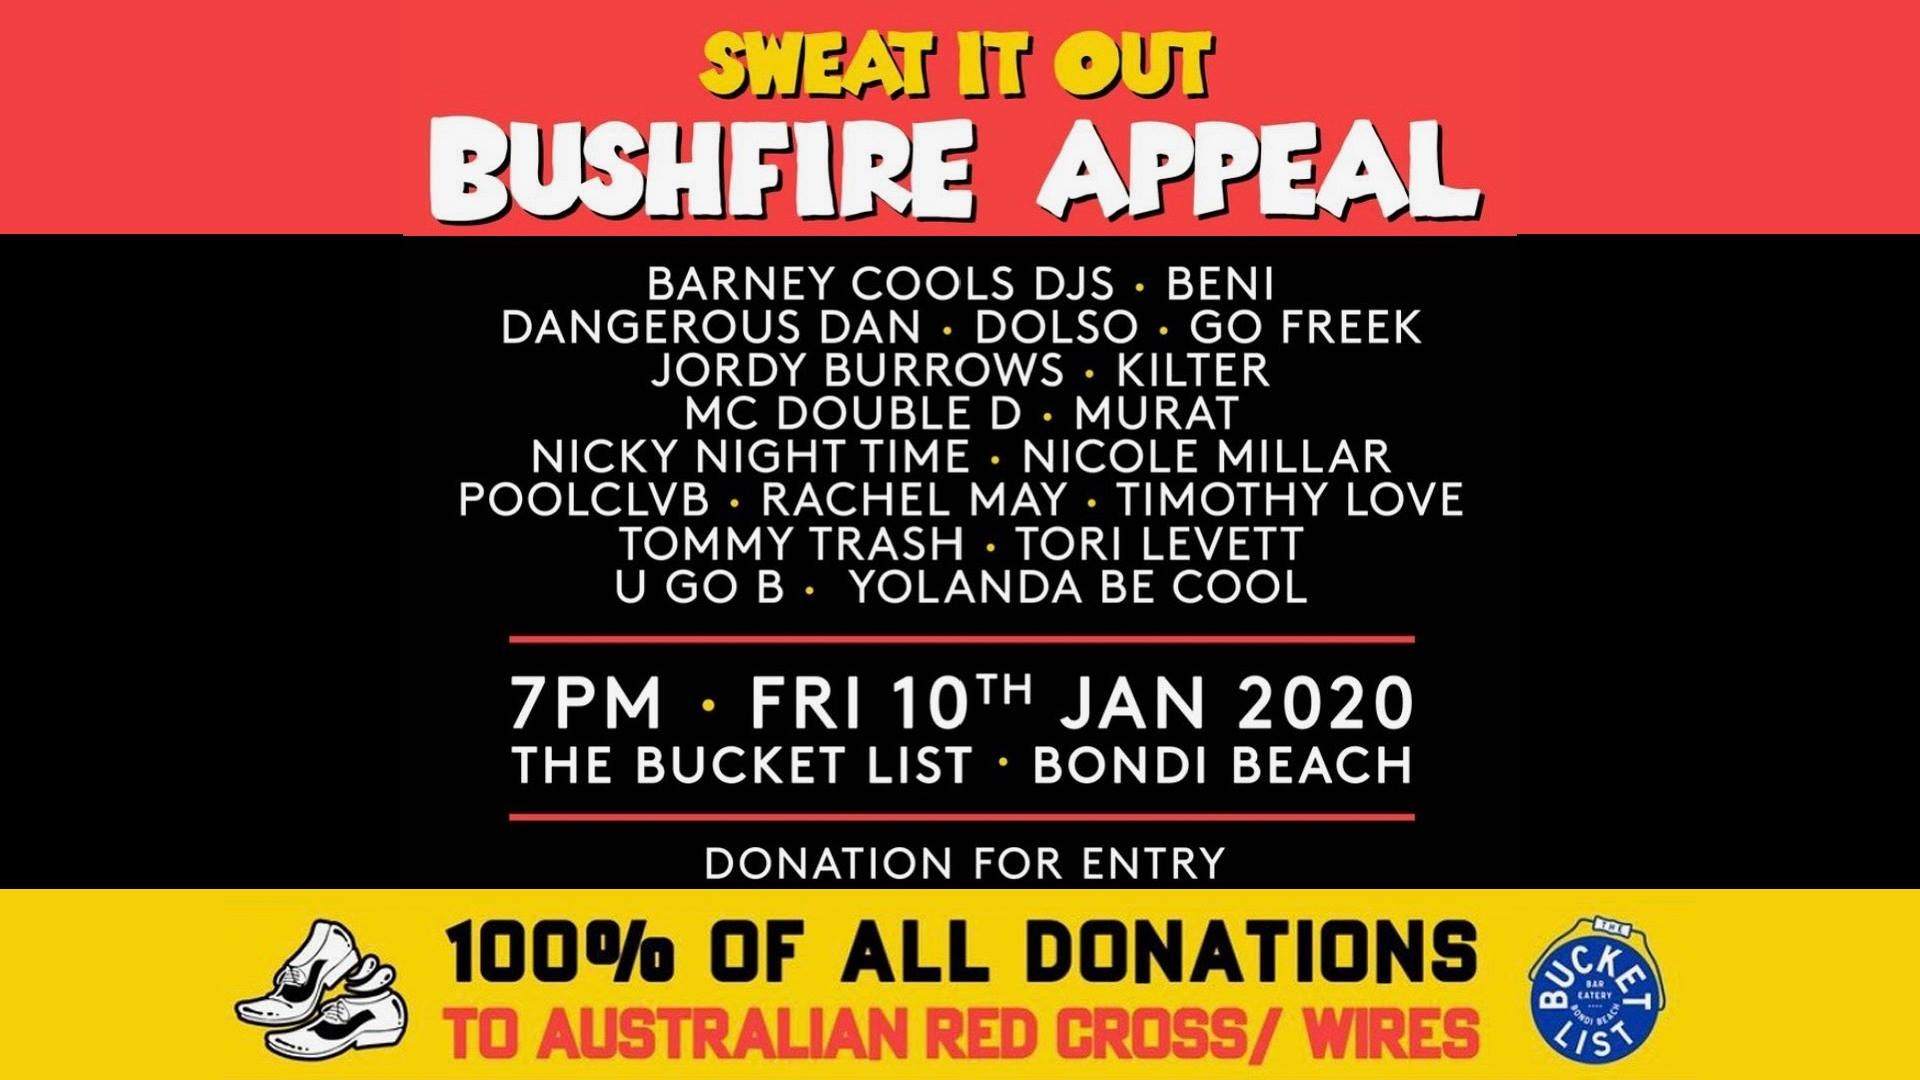 Bushfire appeal. Sweat it out x The Bucket List - フライヤー表